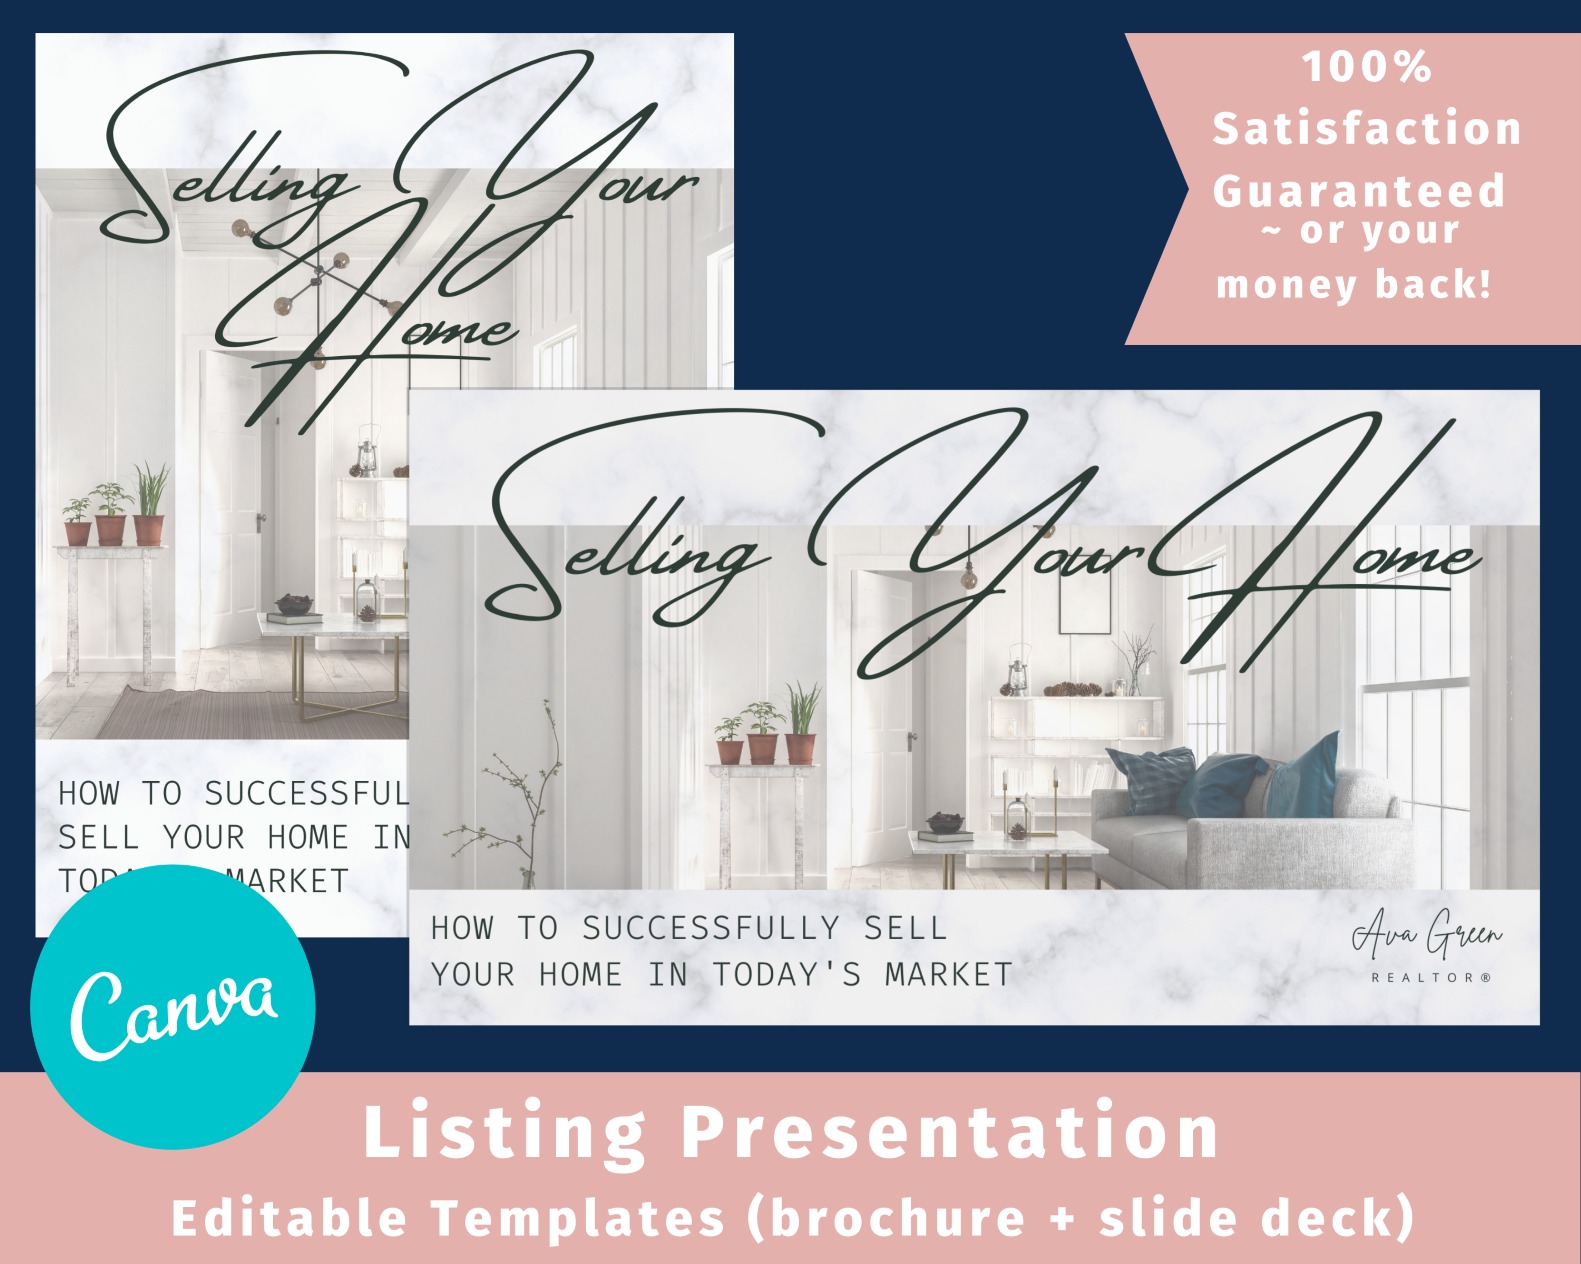 how to do a listing presentation online